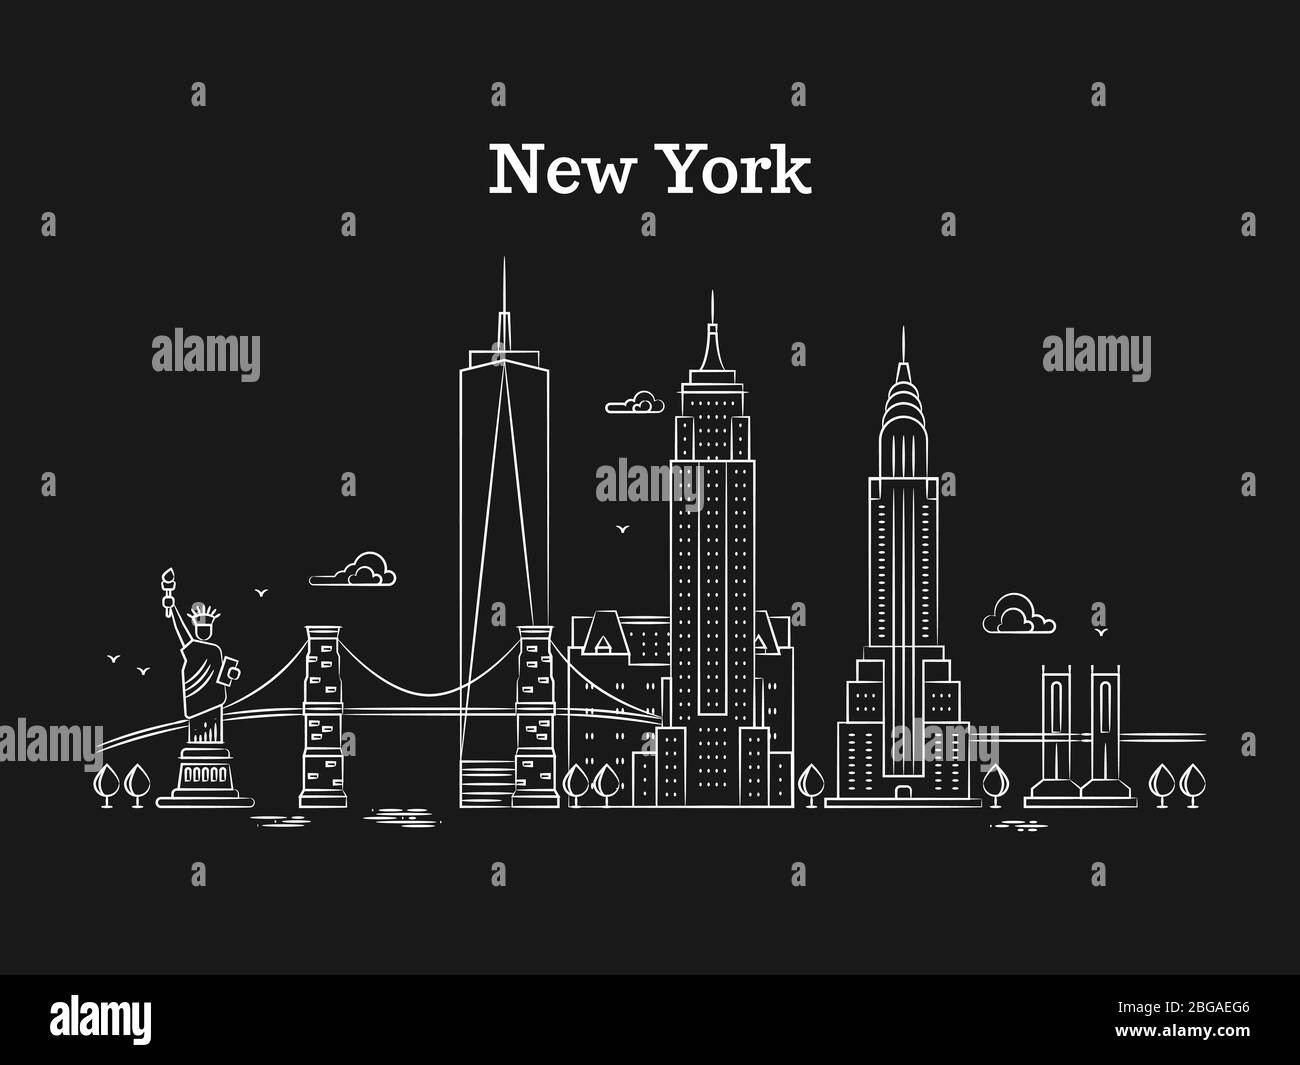 Weißes, lineares New York-Panorama mit Brücken, Wolkenkratzern und Sehenswürdigkeiten auf schwarzem Hintergrund. Vektorgrafik Stock Vektor